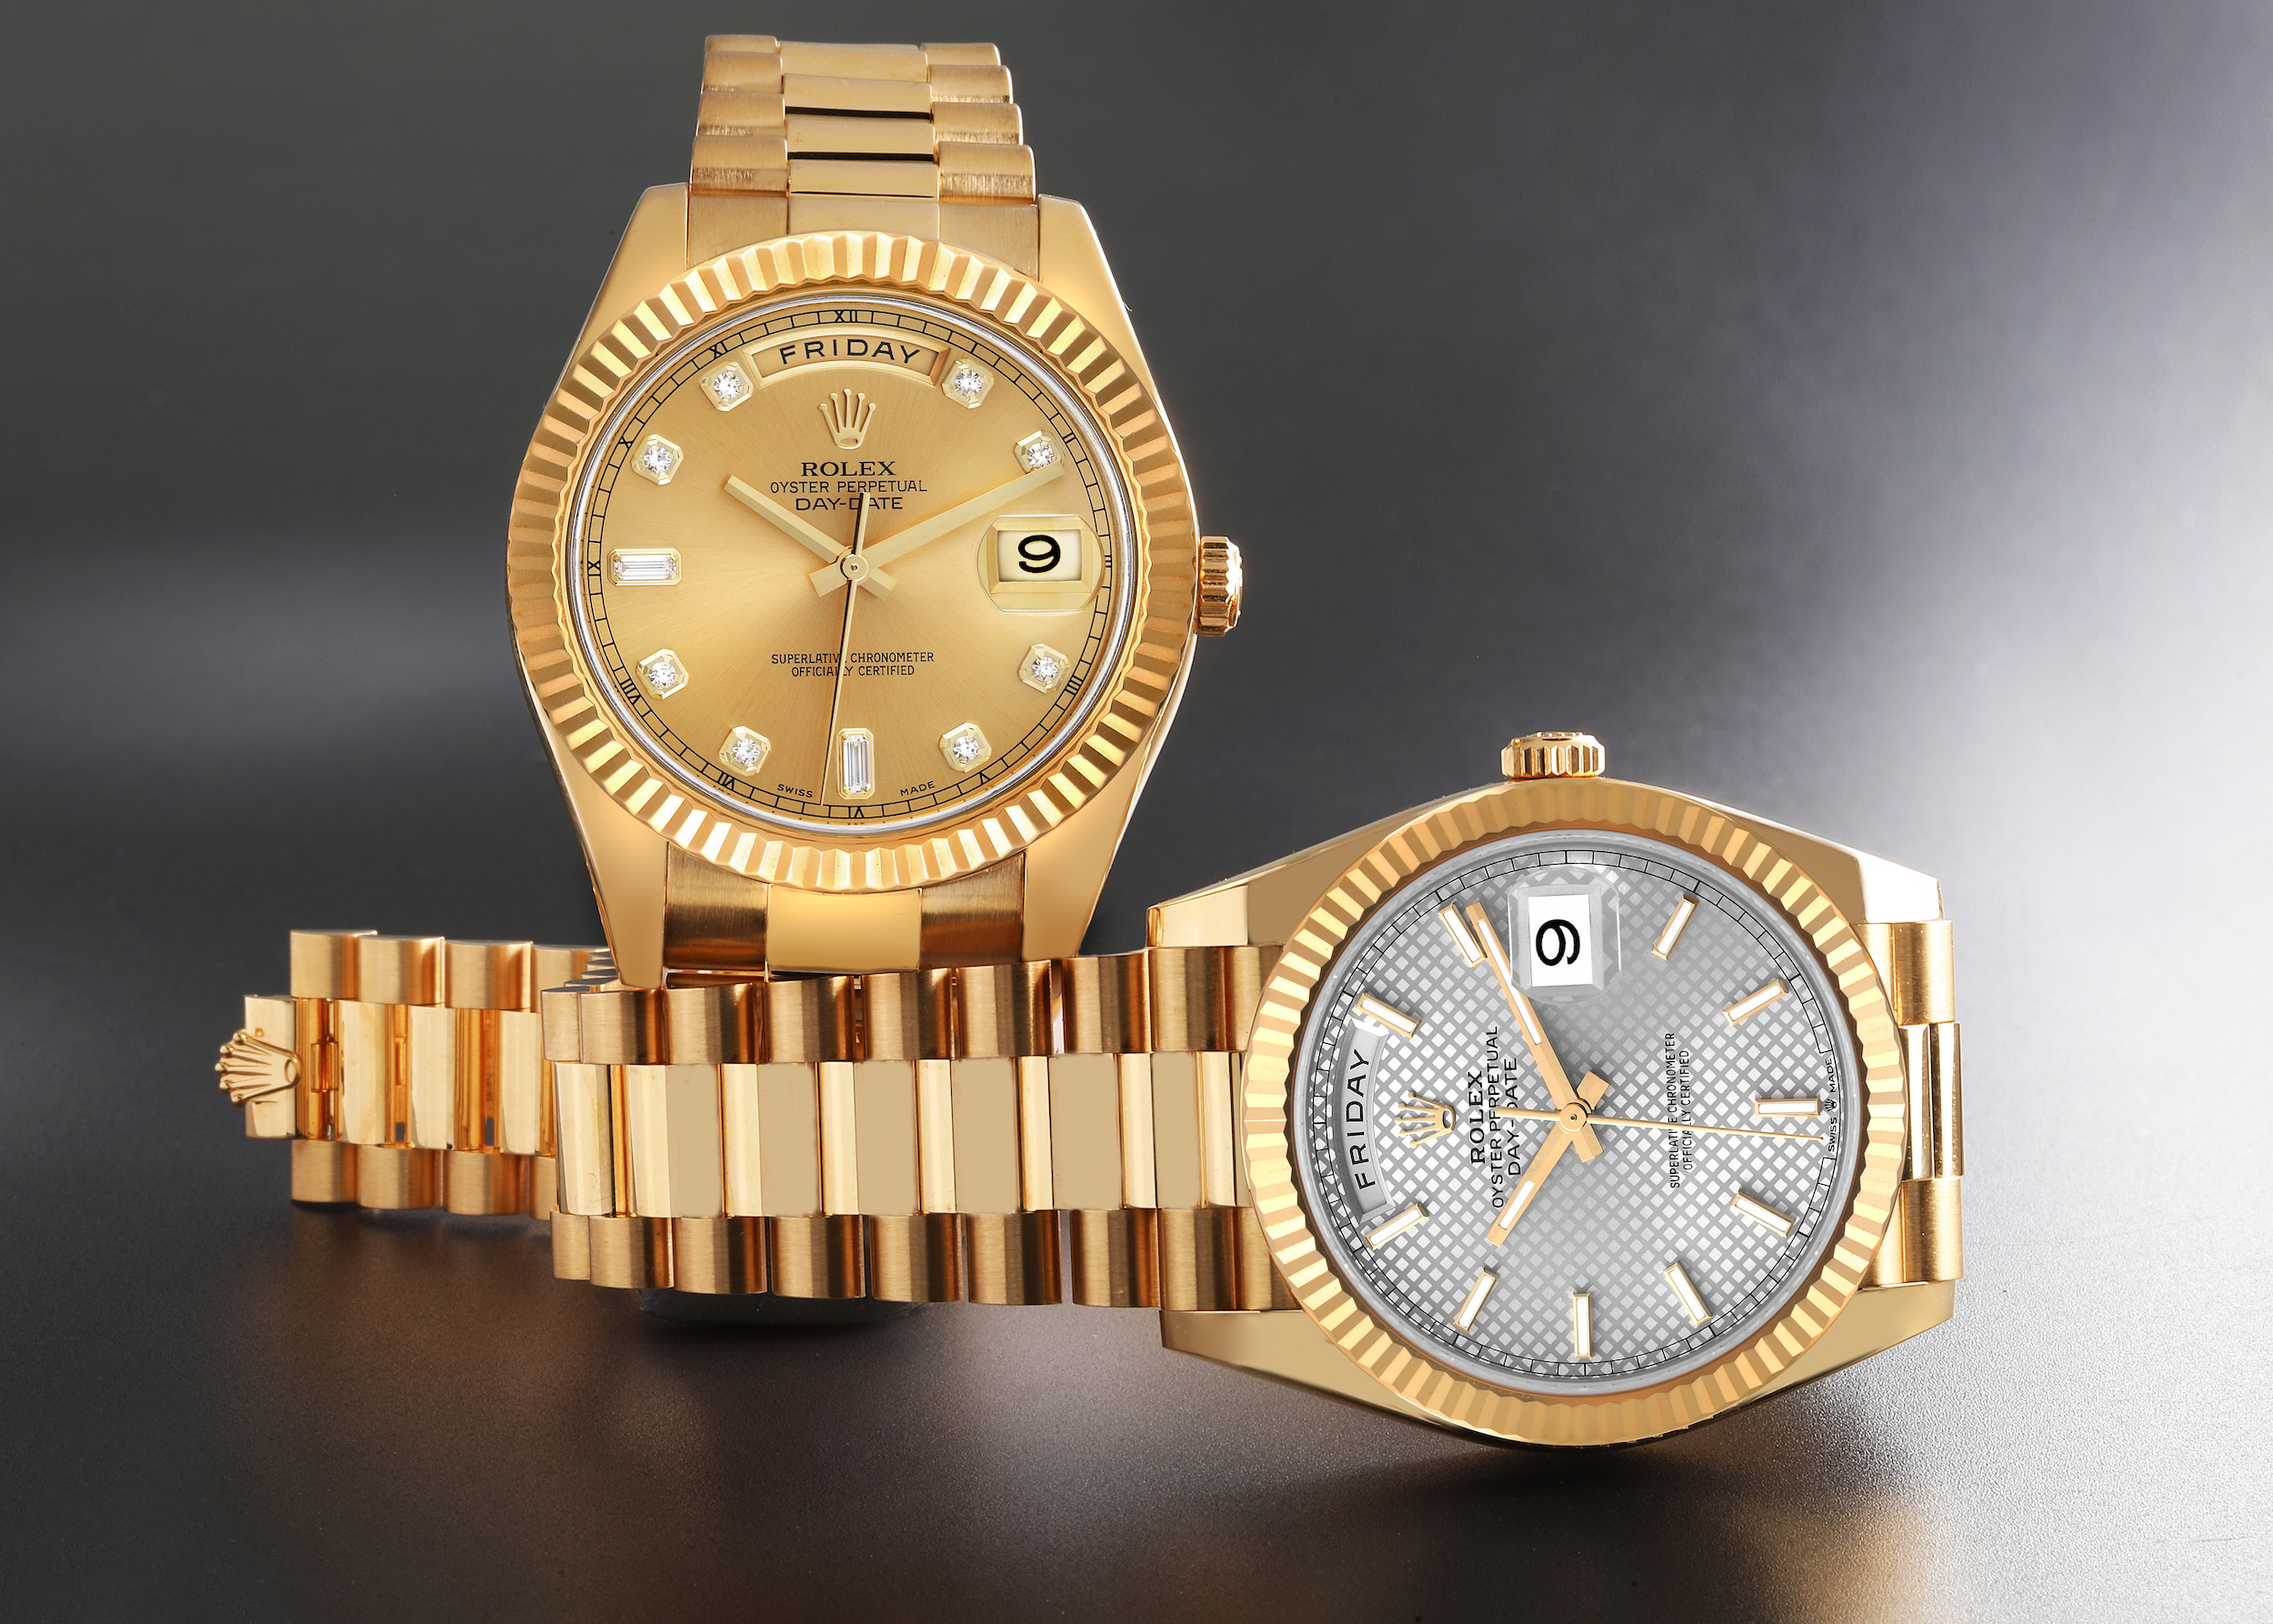 Gold Rolex watch price comparison | Rolex watch price, Gold rolex, Luxury  timepieces